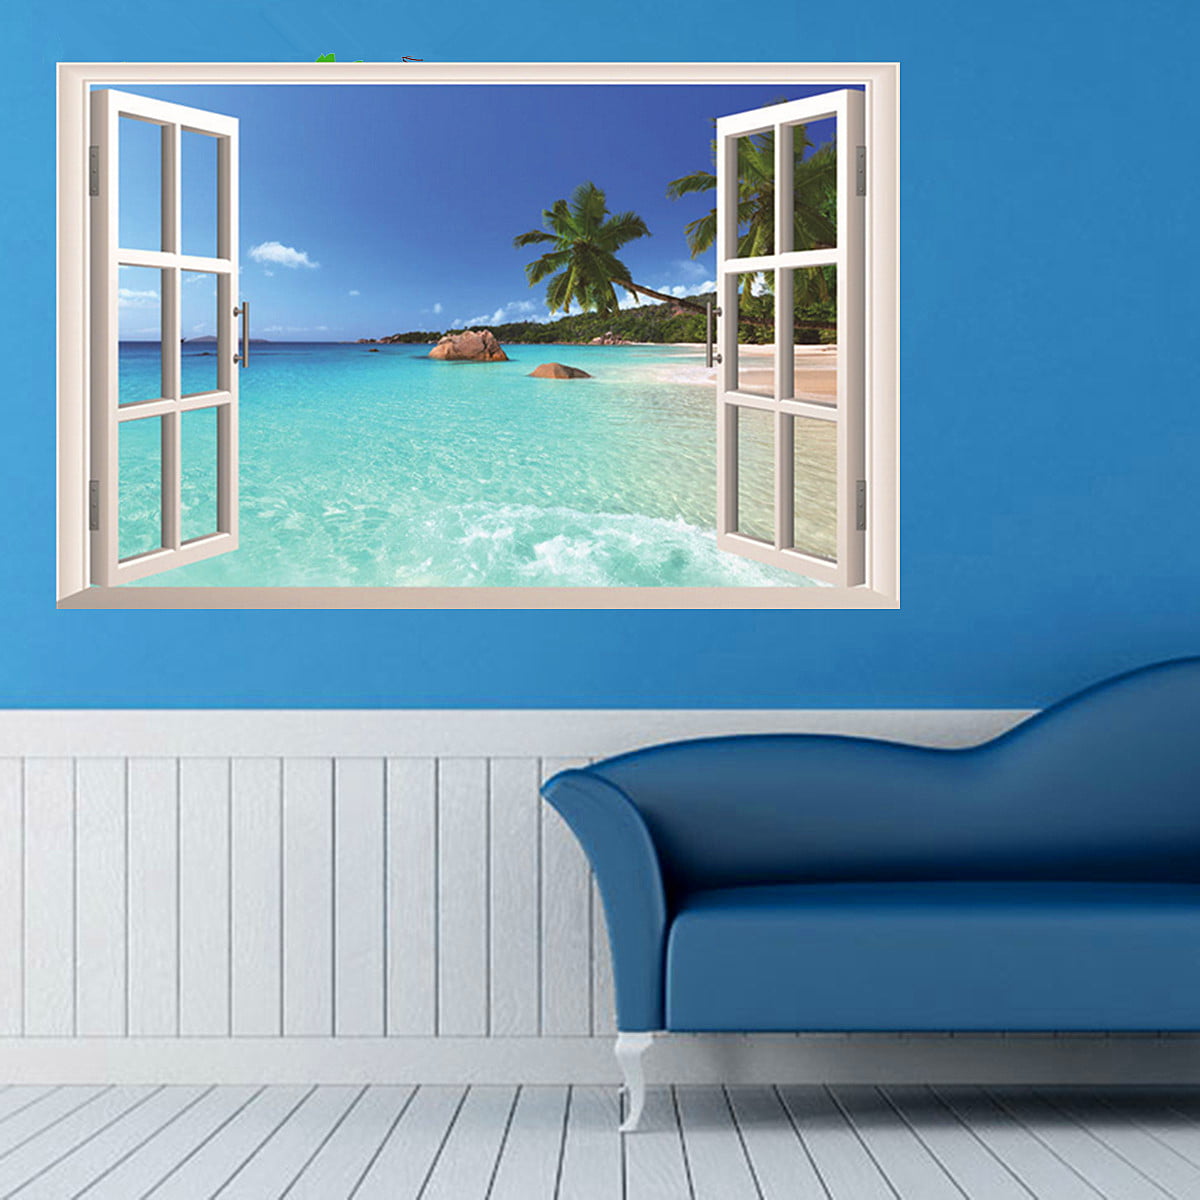 3D Ocean Removable Vinyl Decal Wall Sticker Art Mural Room/Window Home-Decor